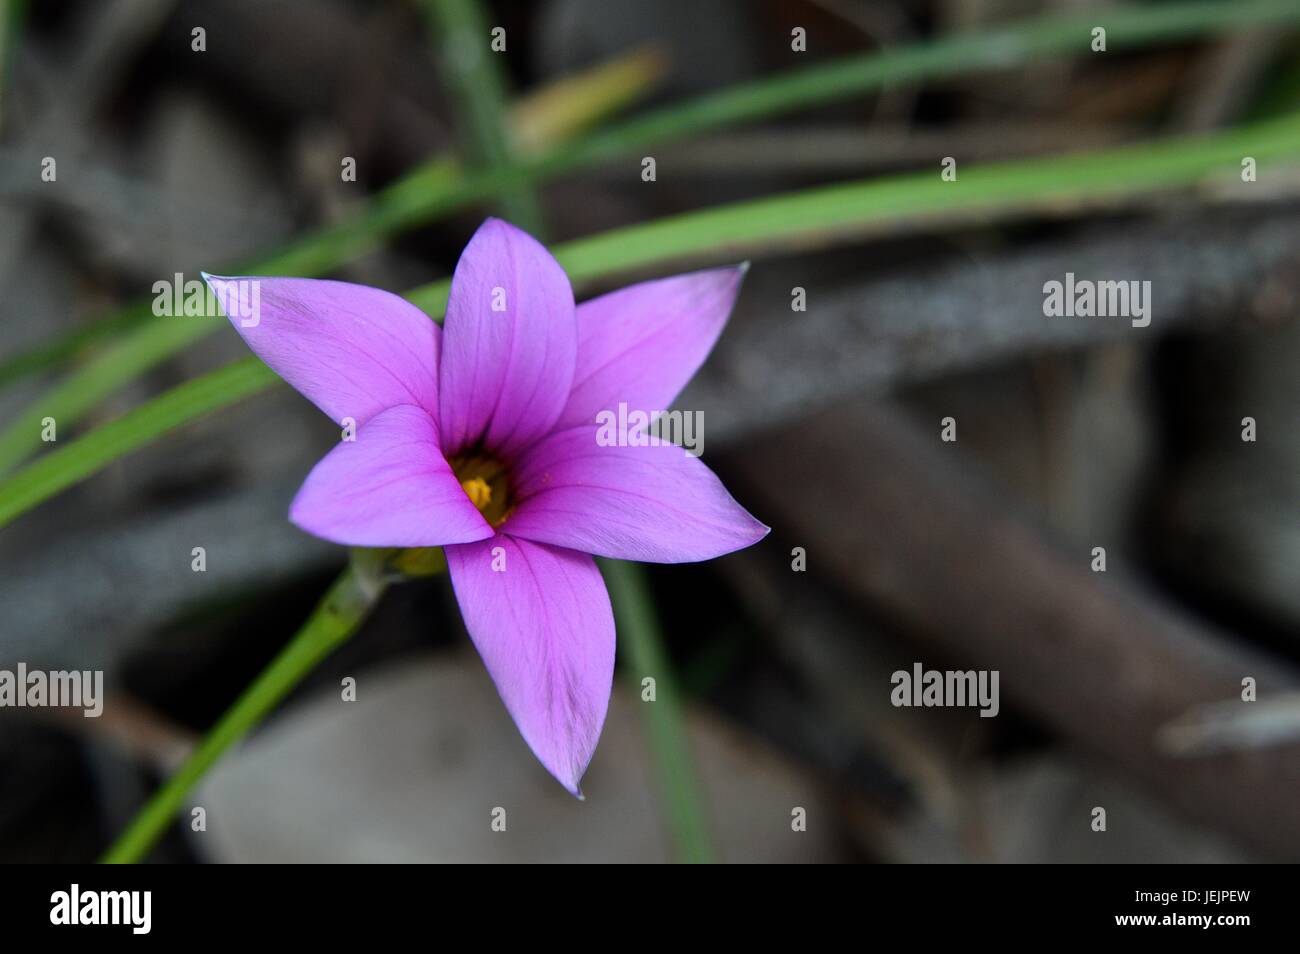 Pink grass flower Stock Photo